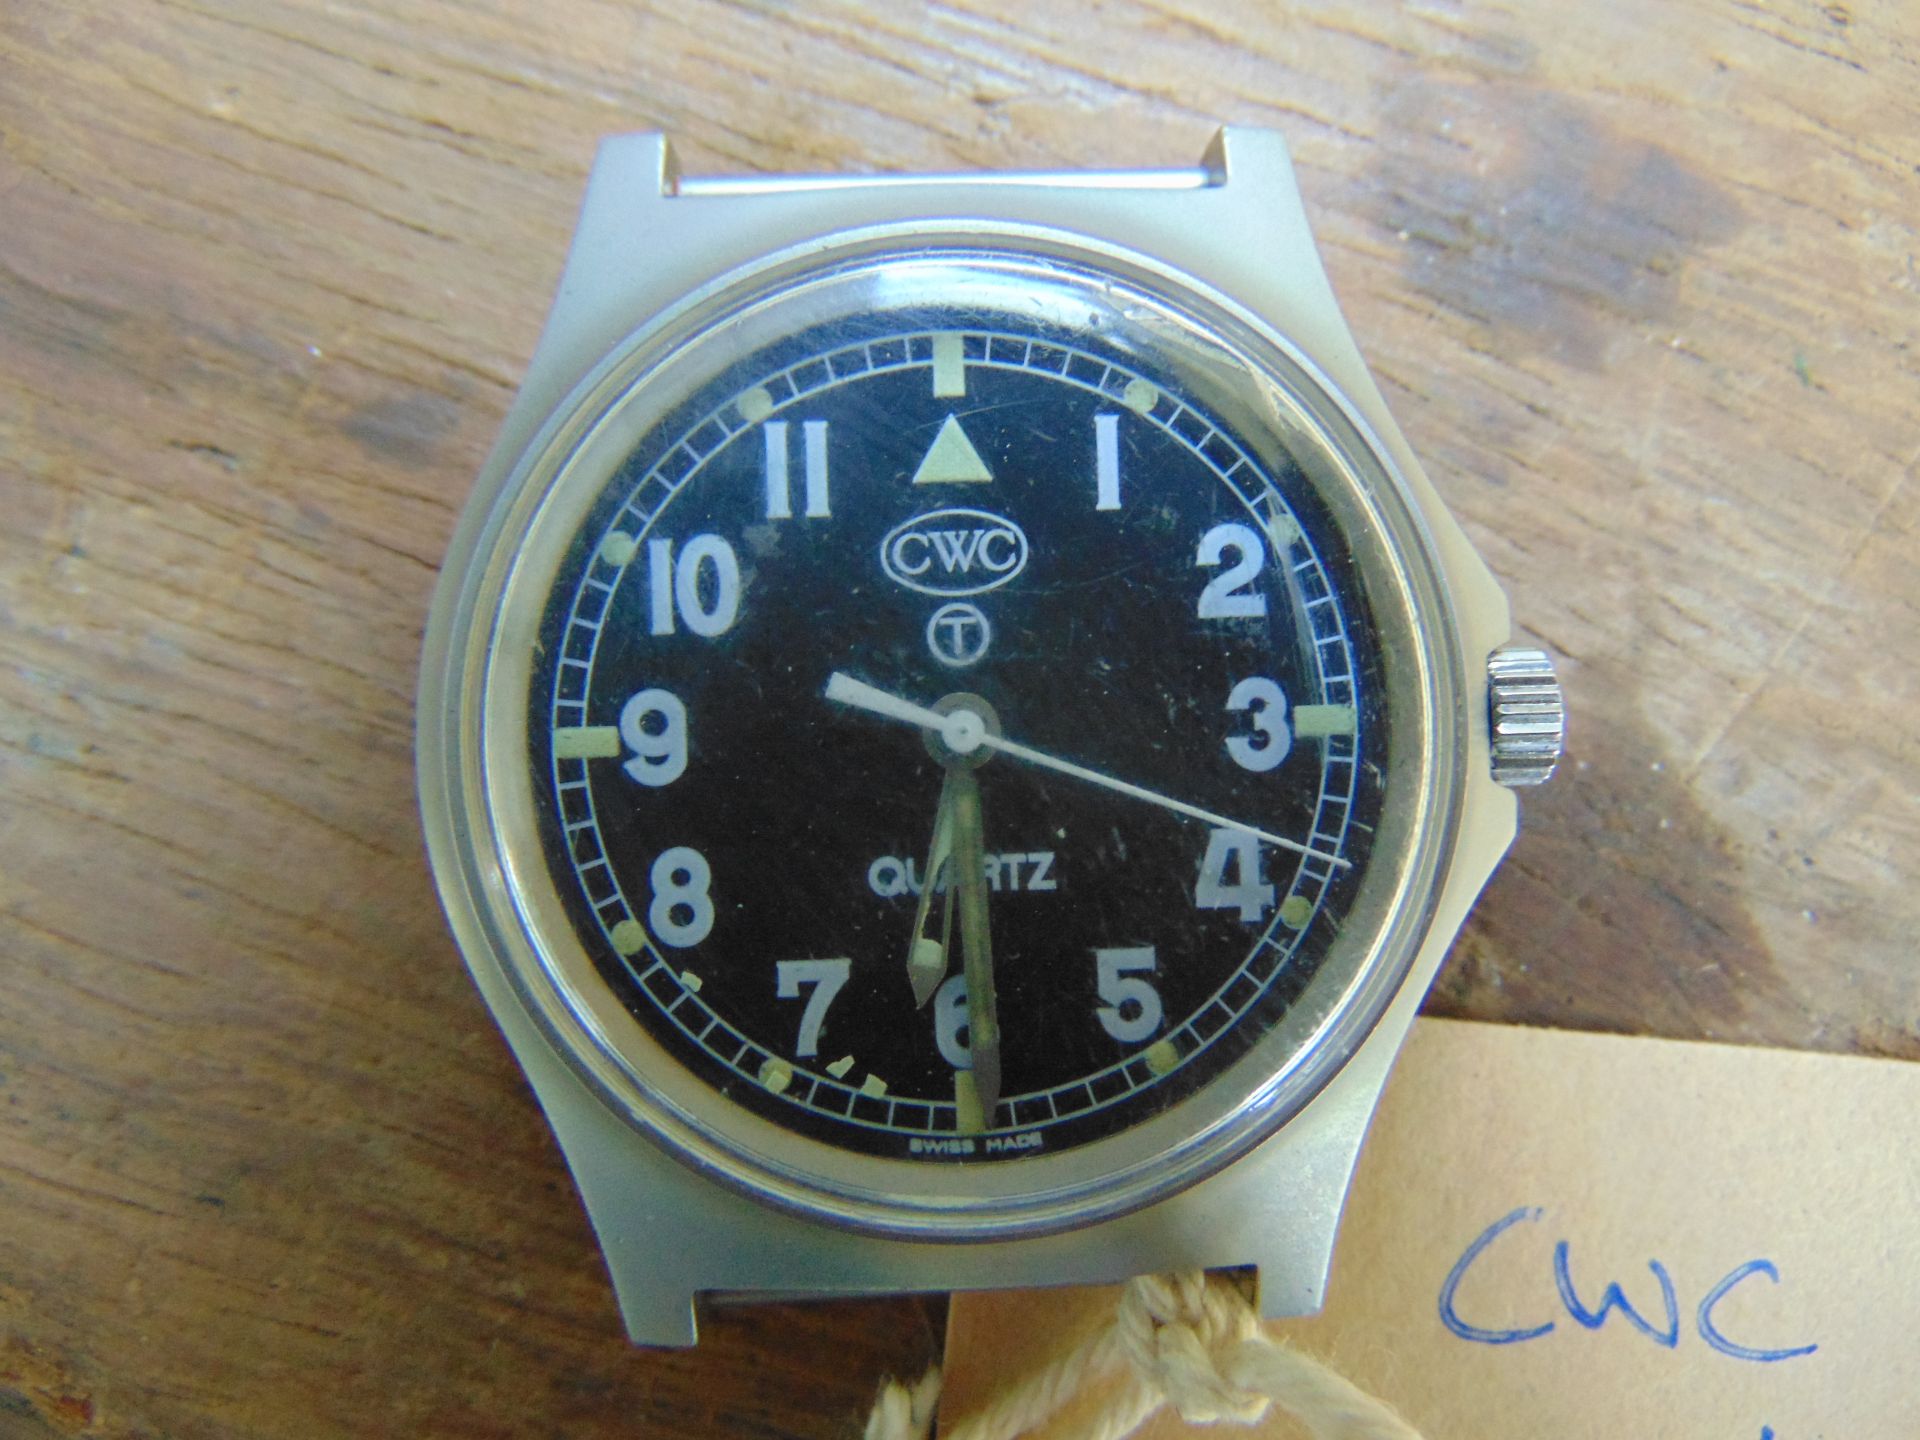 1 Very Rare Genuine British Army, Waterproof CWC quartz wrist watch